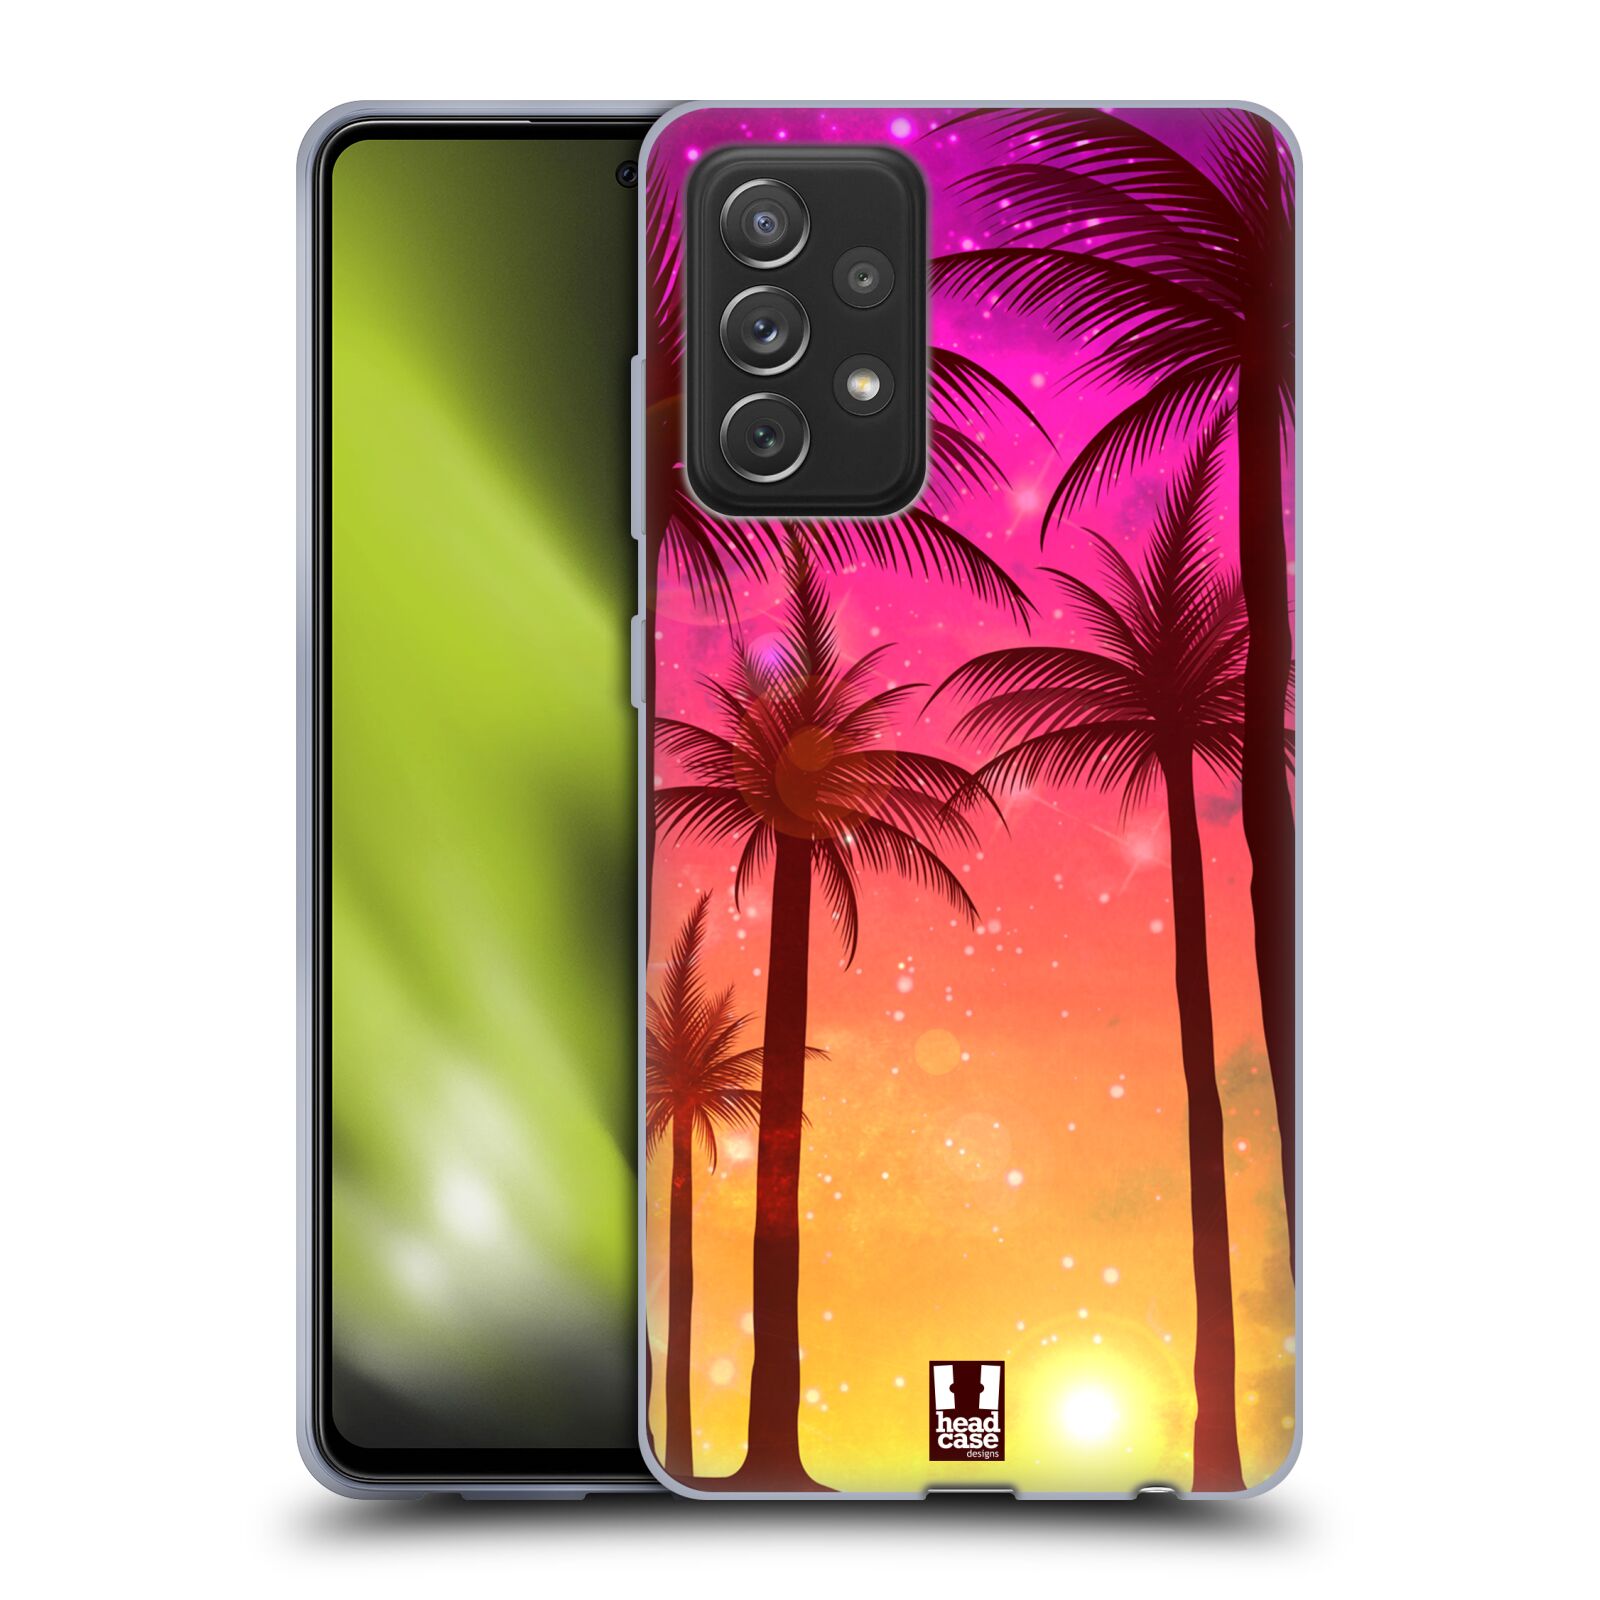 Plastový obal HEAD CASE na mobil Samsung Galaxy A72 / A72 5G vzor Kreslený motiv silueta moře a palmy RŮŽOVÁ